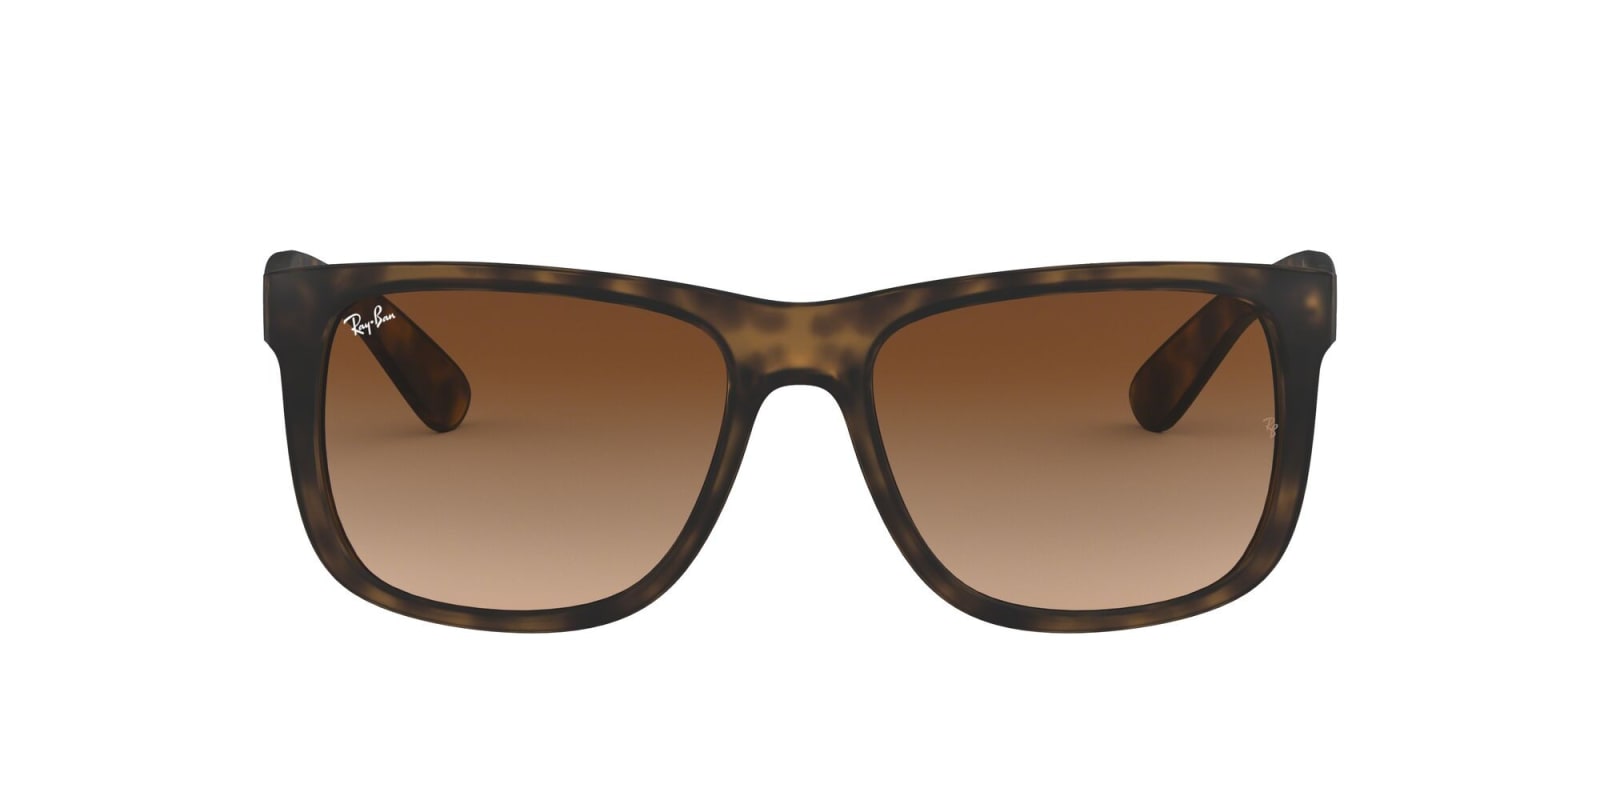 Ray Ban Sunglasses In Marrone/marrone